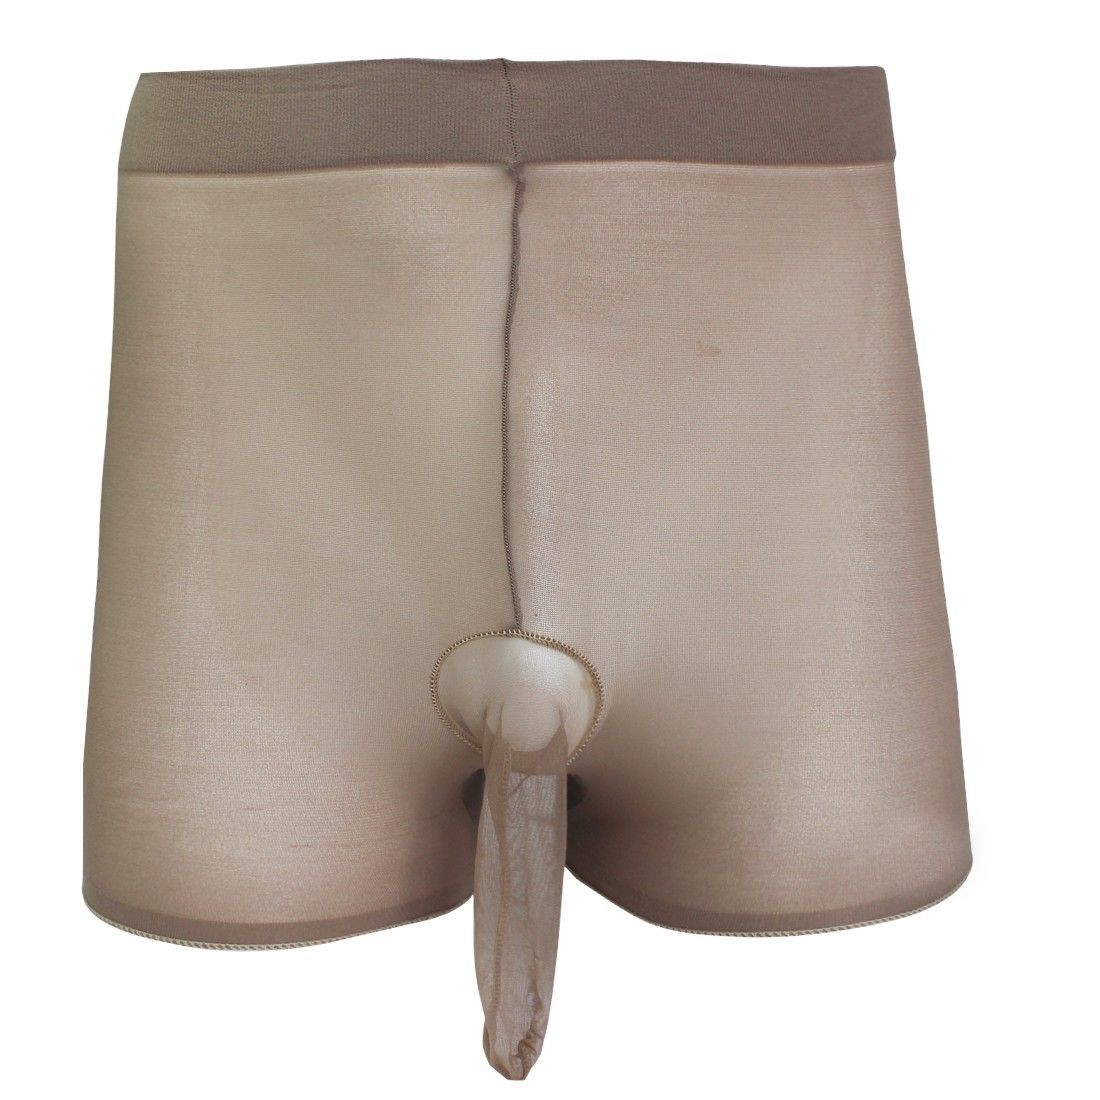 Gray Open Sheath Underwear